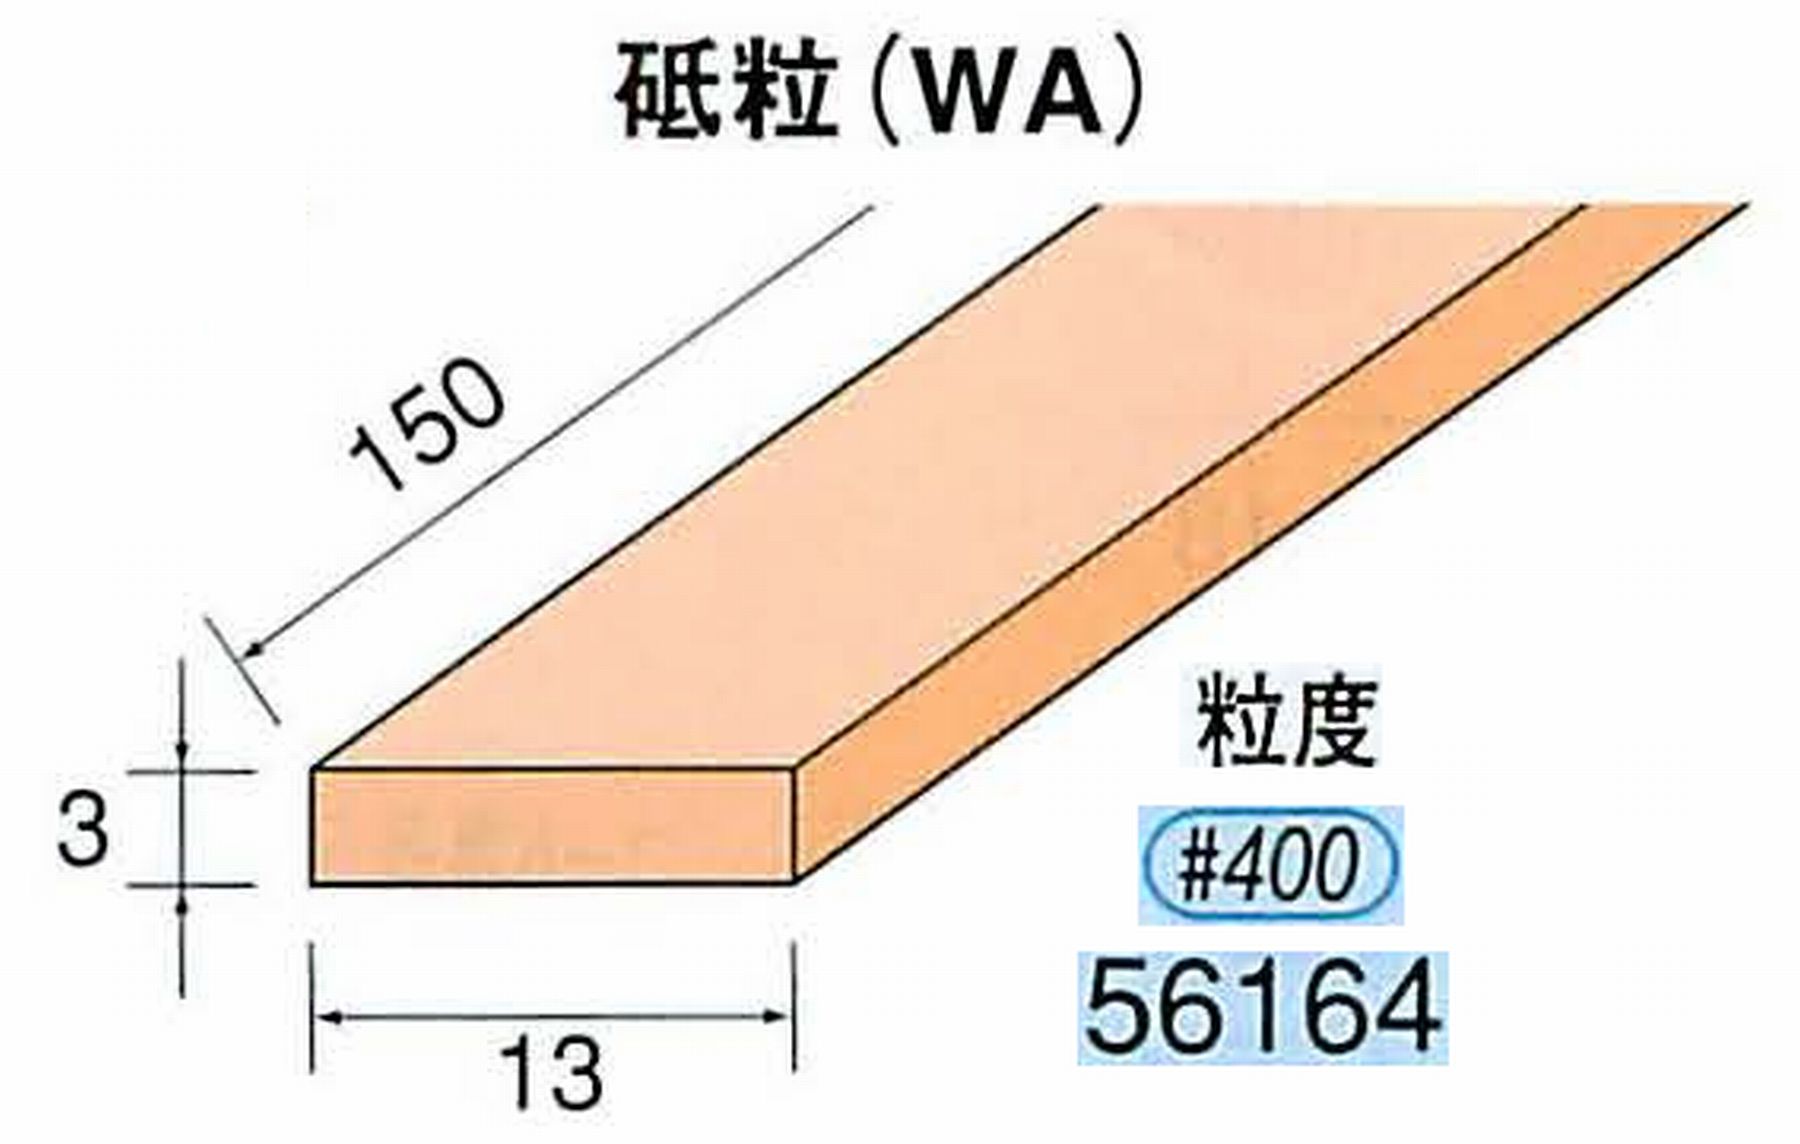 ナカニシ/NAKANISHI スティック砥石 スタンダードシリーズ 砥粒(WA) 56164